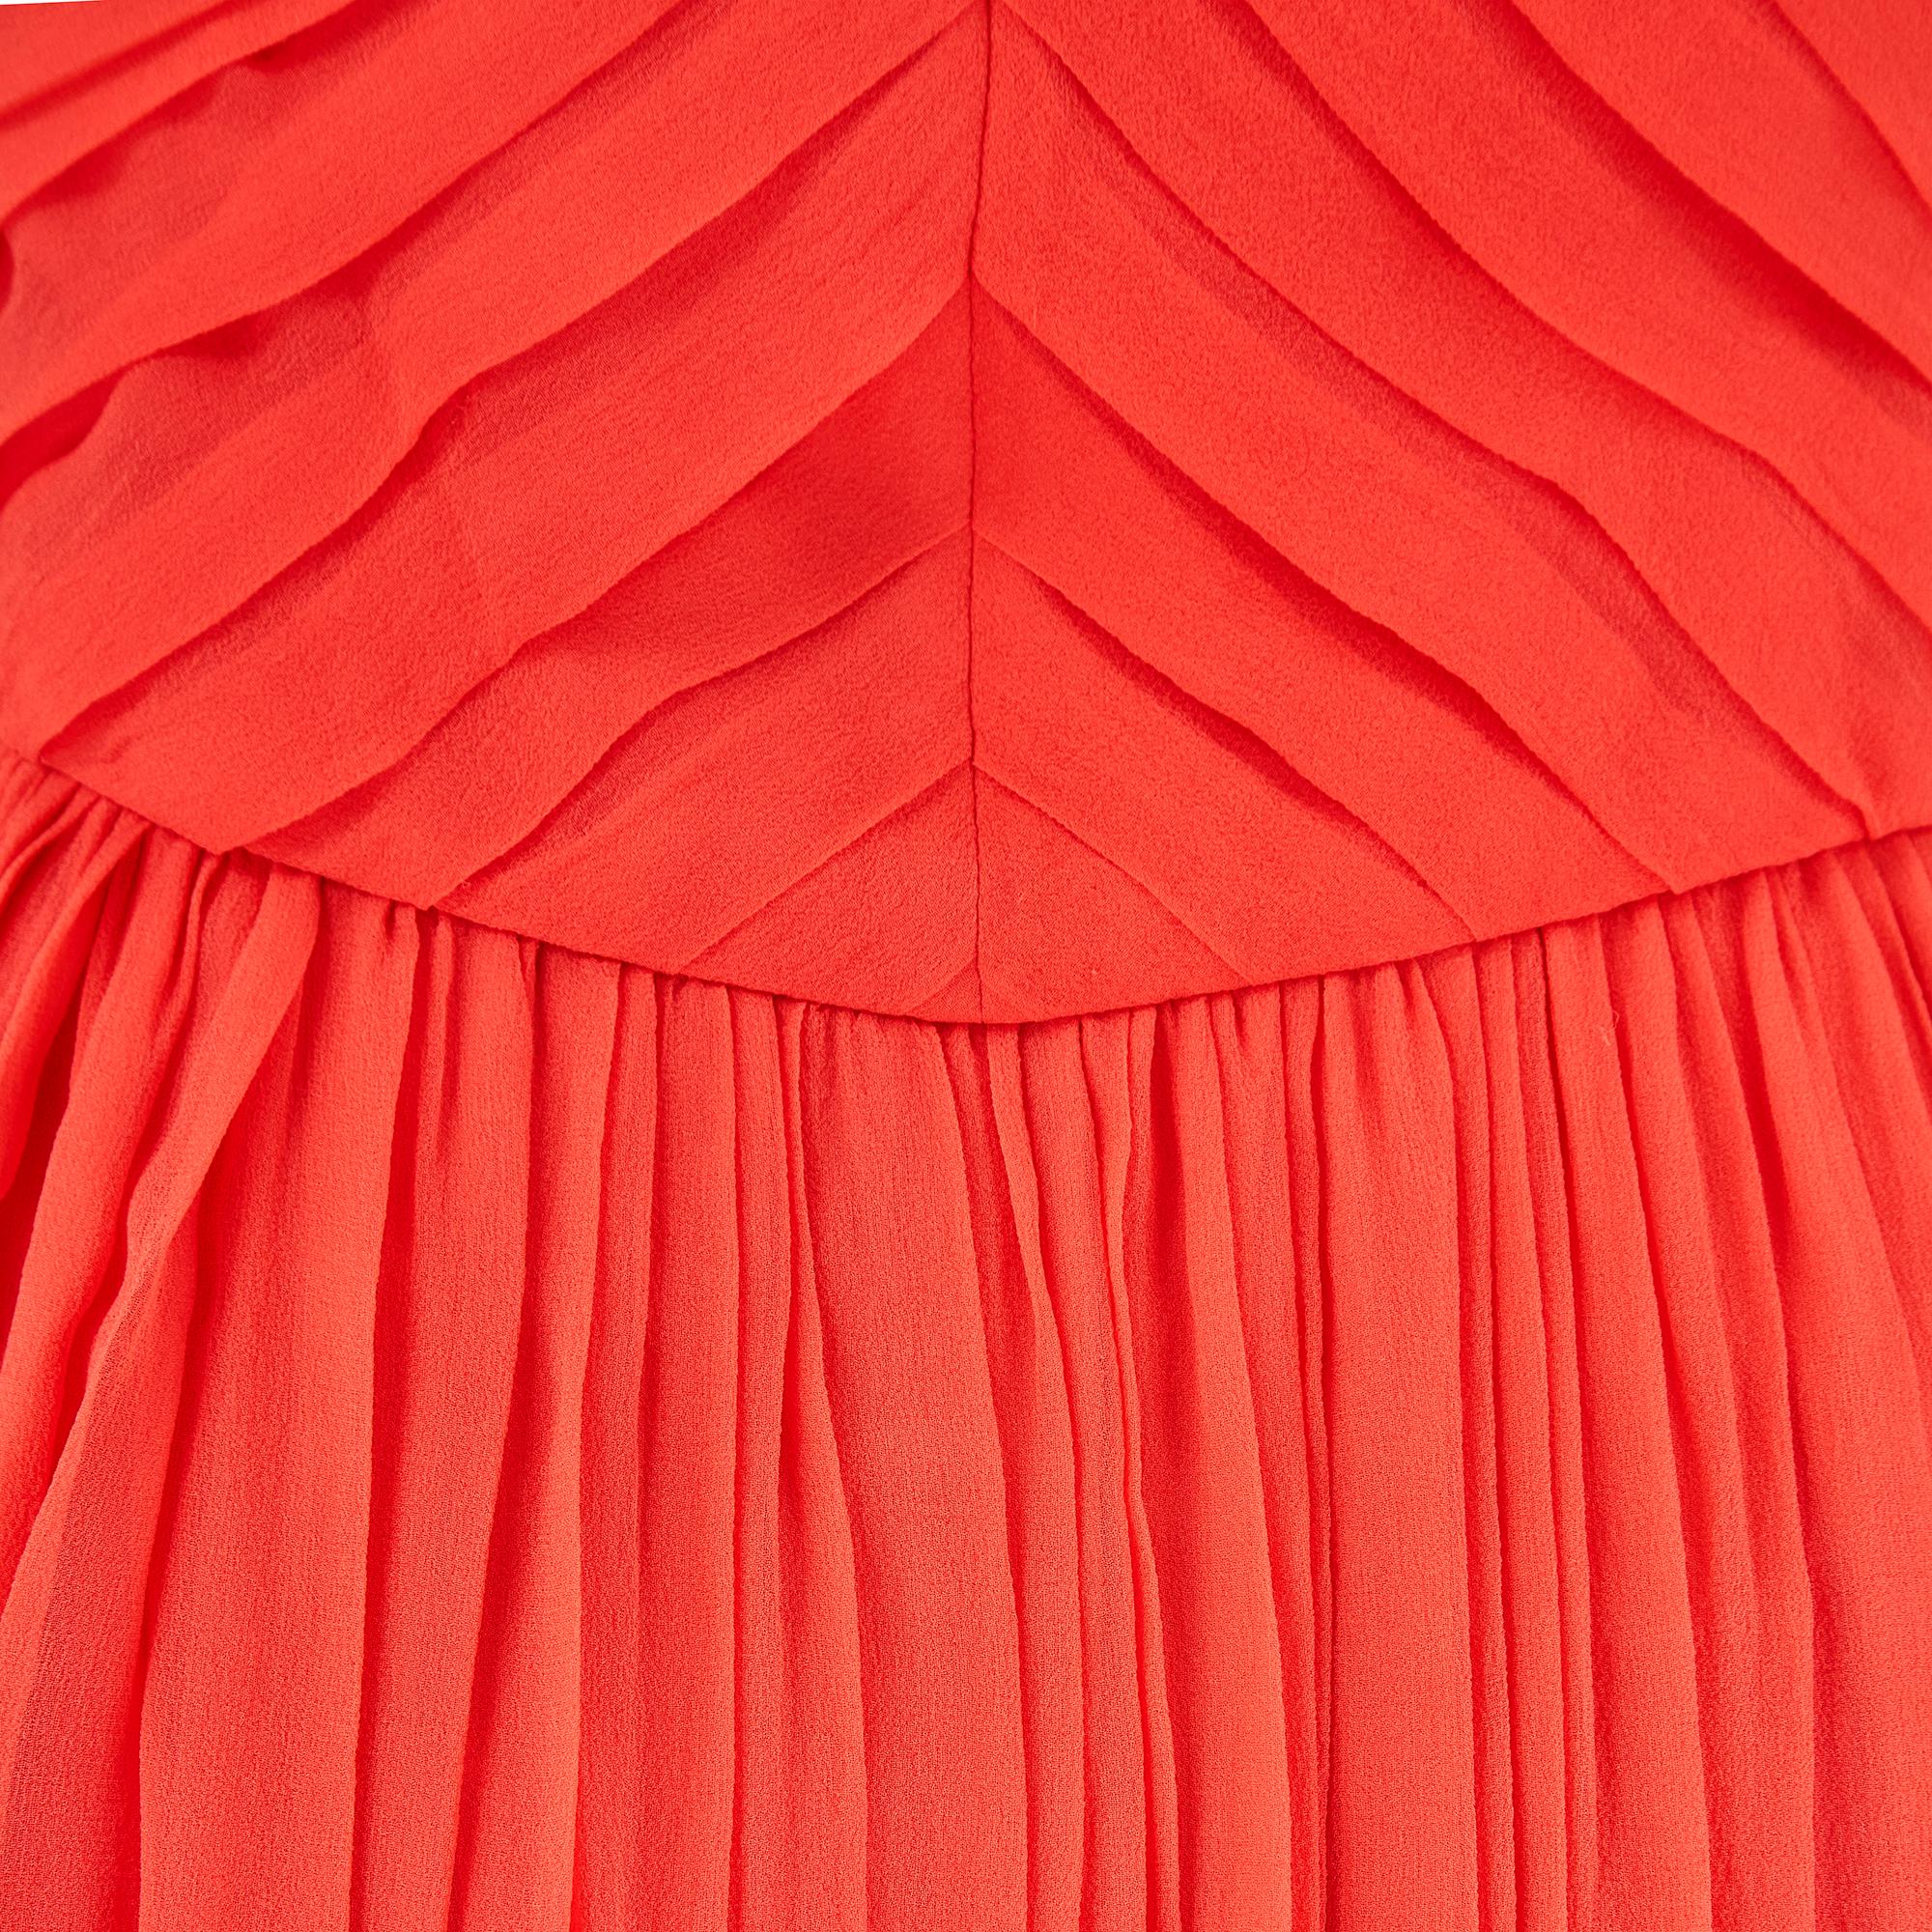 Women's 1980s Louis Feraud Silk Orange Pleated Chiffon Dress For Sale